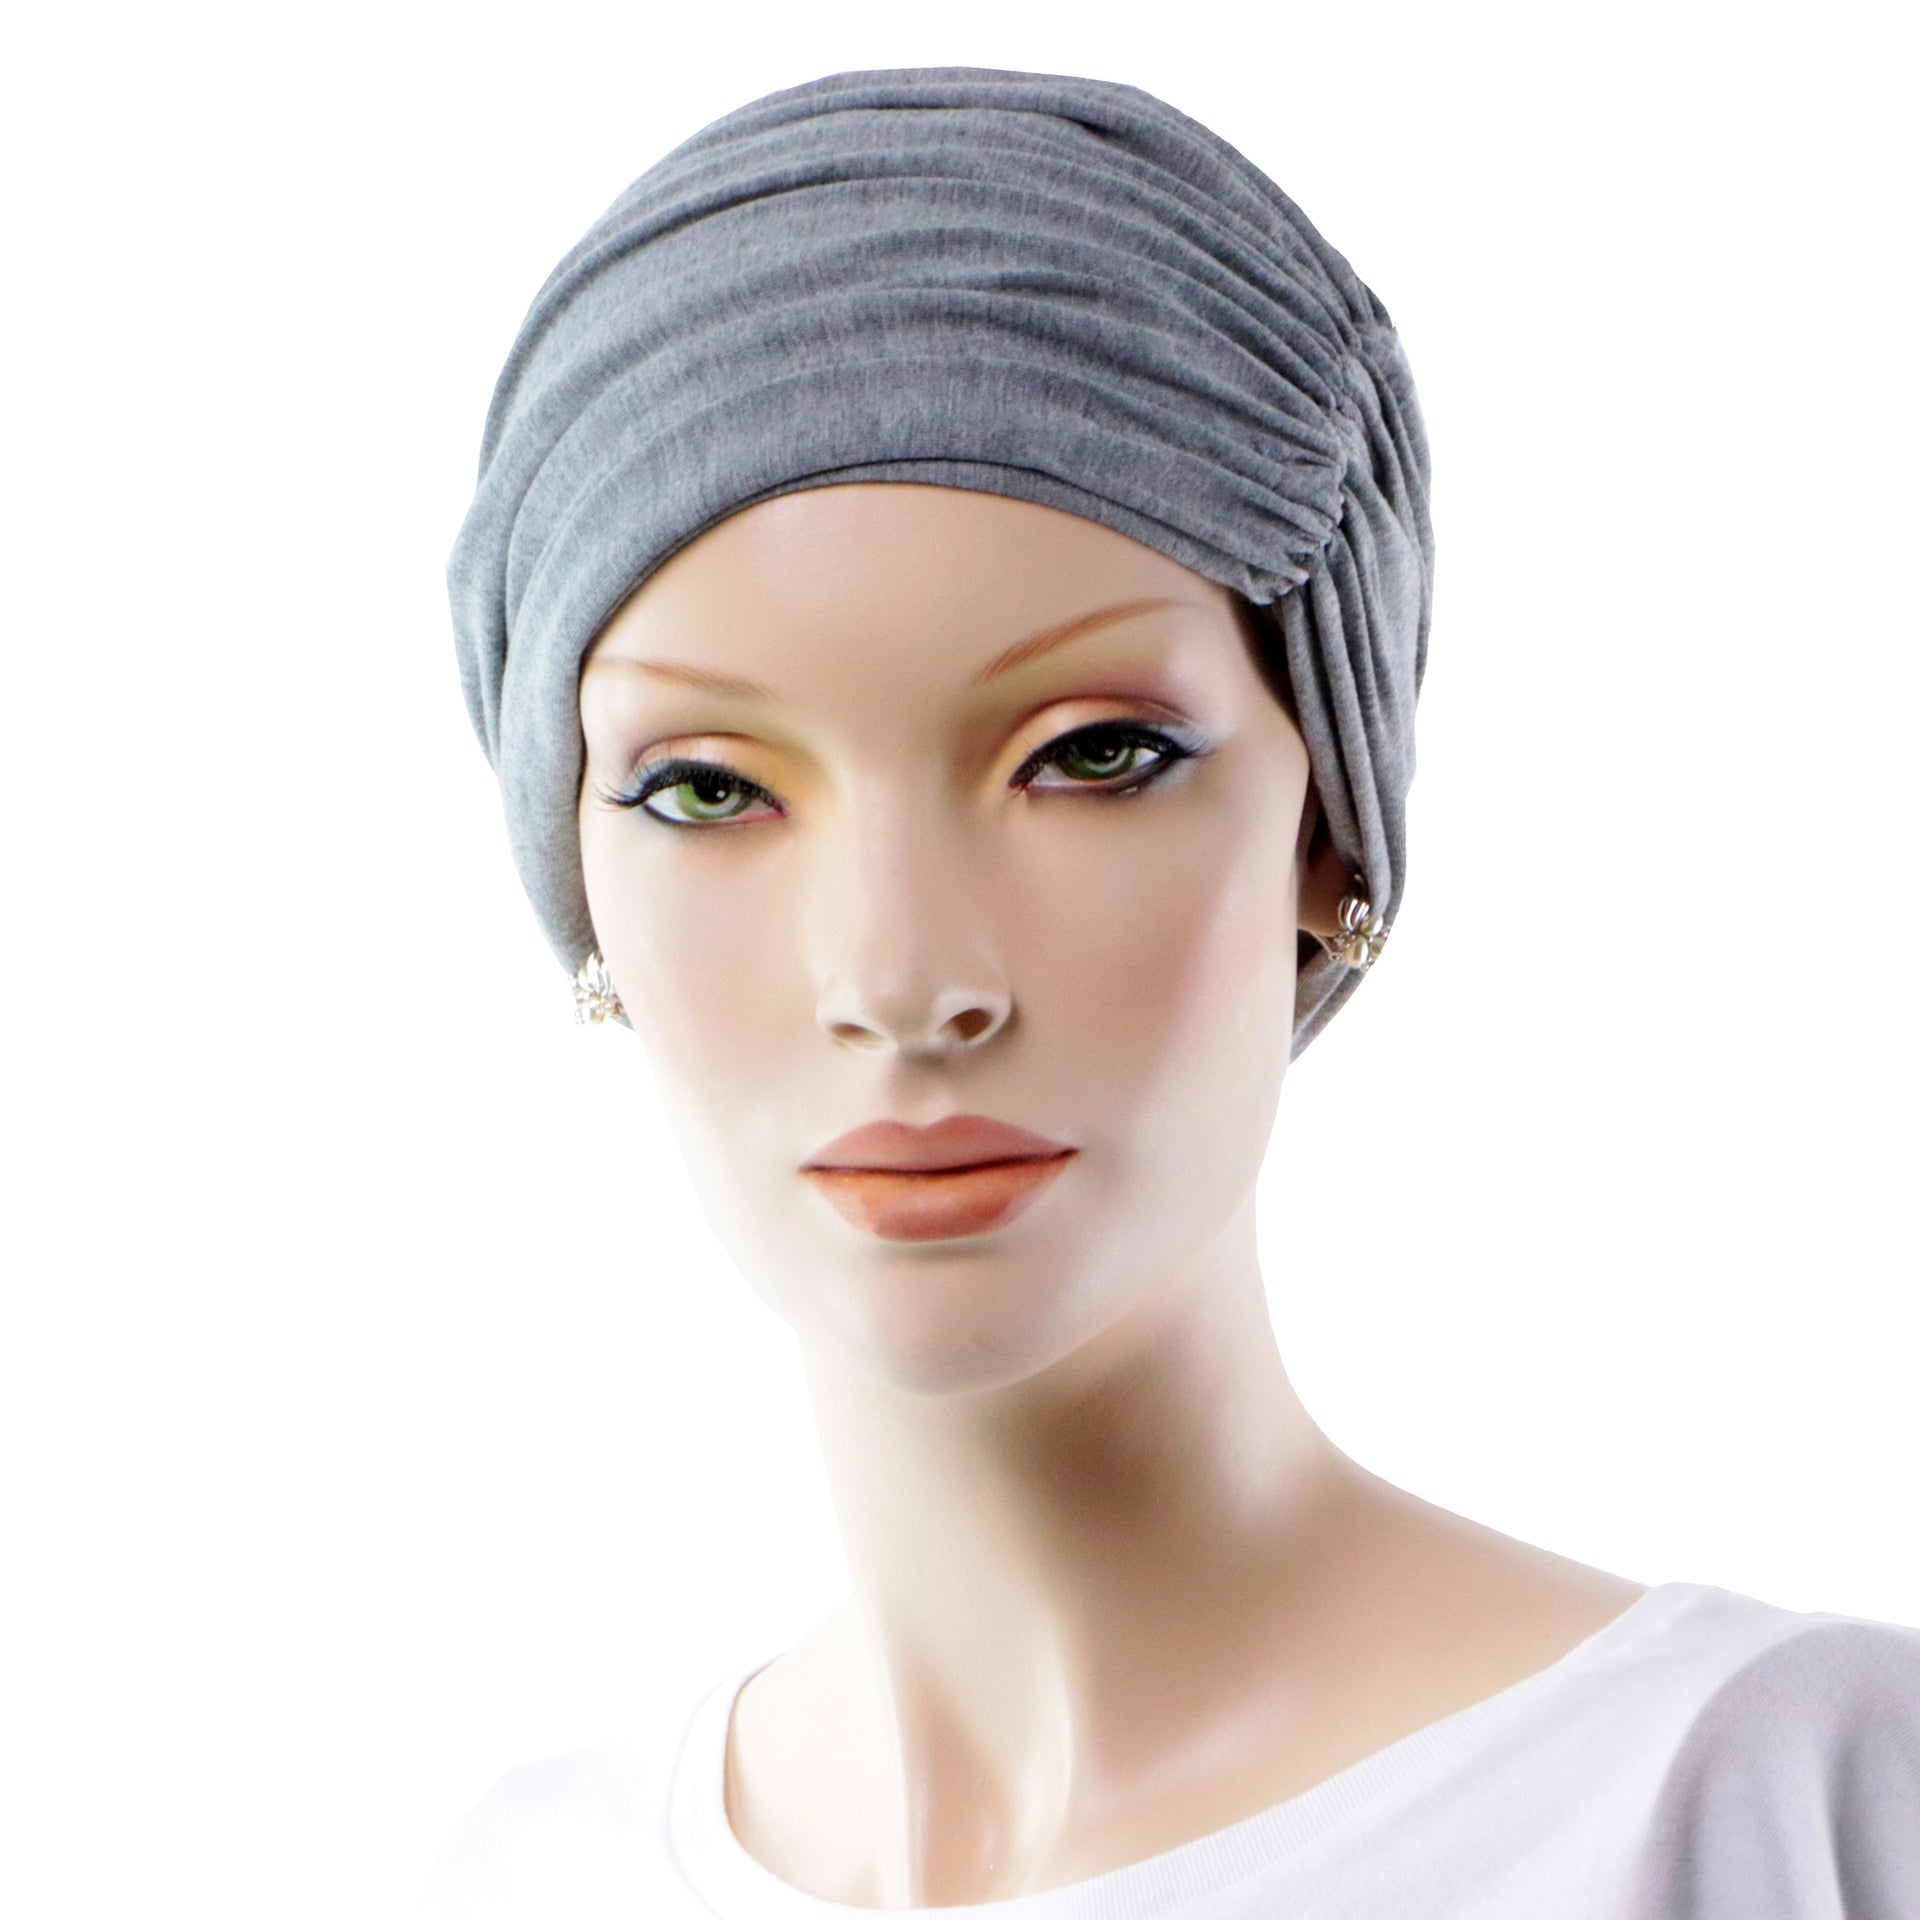 https://groupesoinsadomicile.com/cdn/shop/products/bonnet-chimio-doux-bambou-gris-convertible-vue-turban-cancer-face.jpg?v=1617739776&width=1920